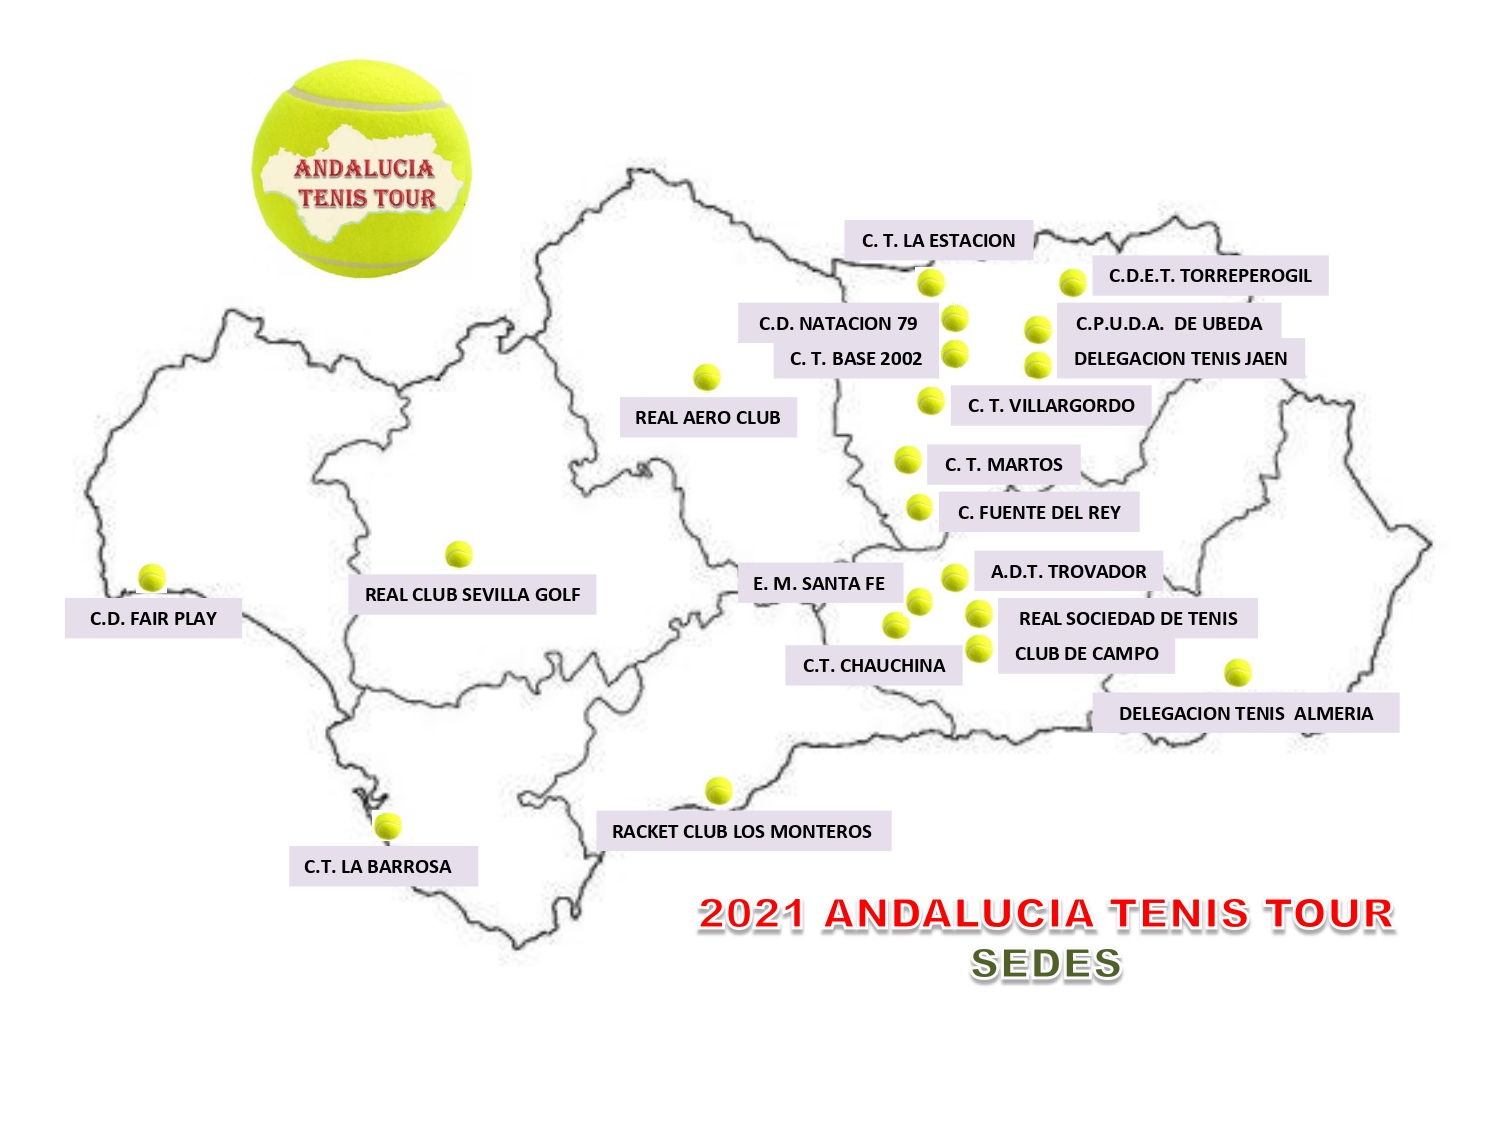 2021 ANDALUCIA TENIS TOUR. SEDES